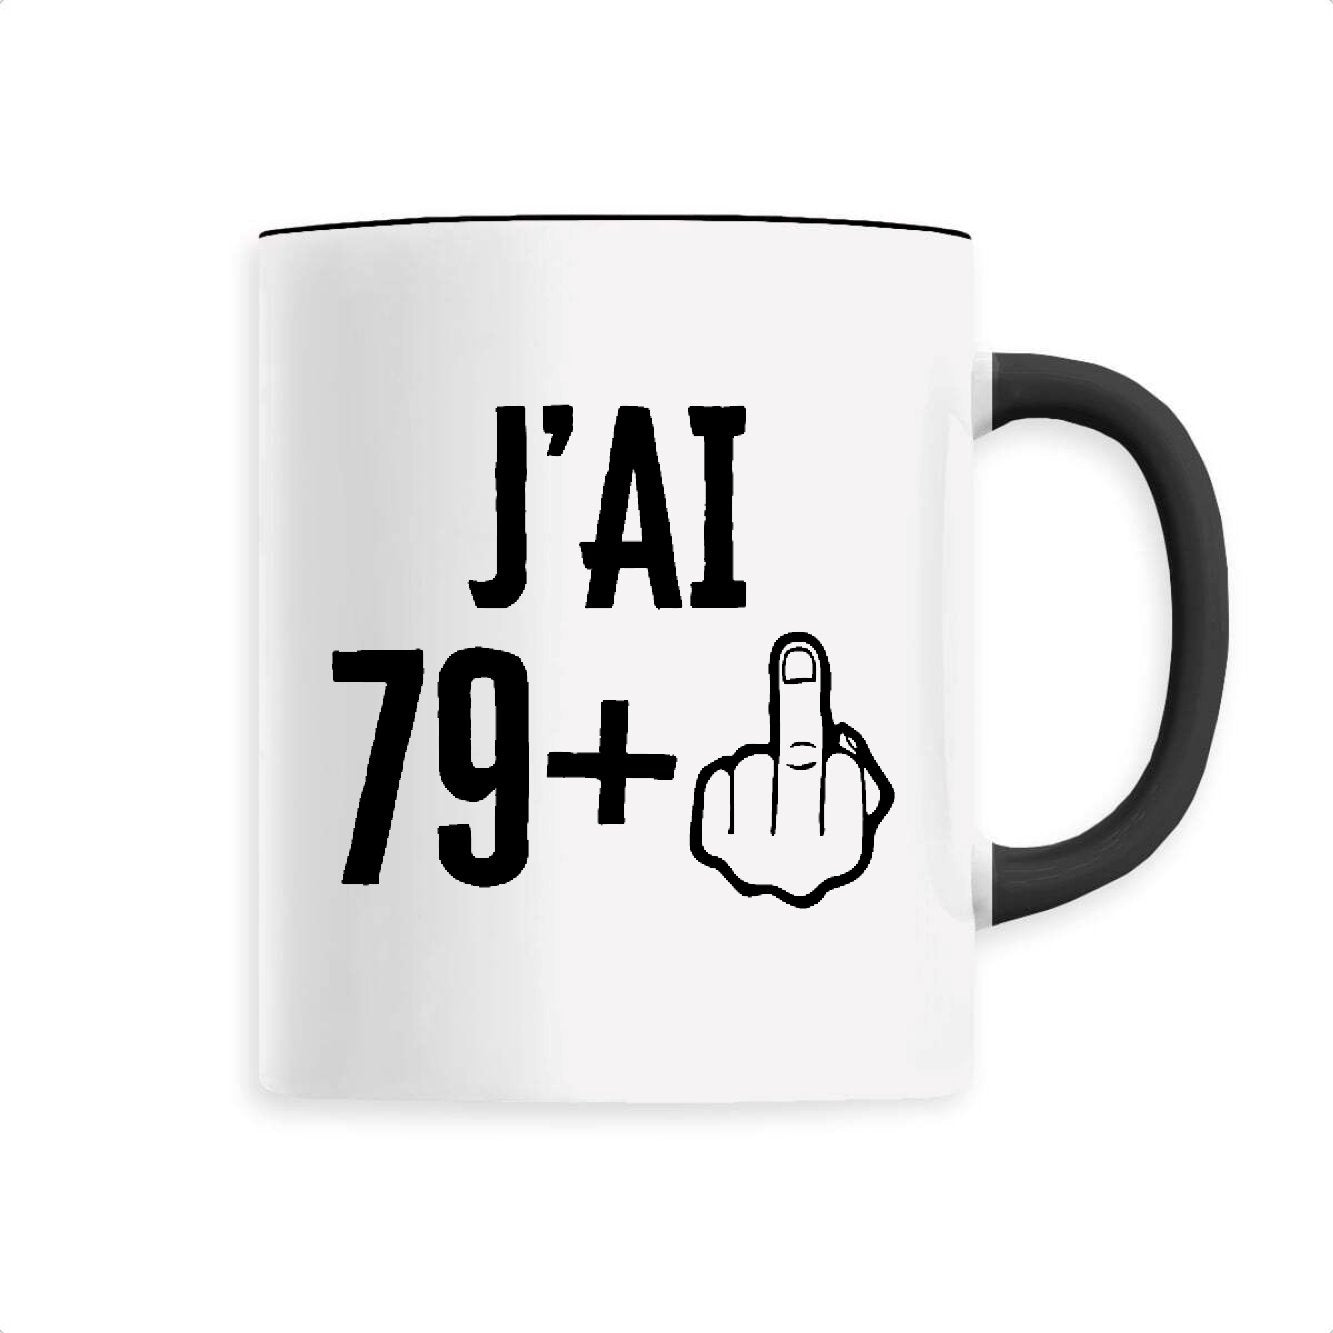 Mug J'ai 80 ans 79 + 1 